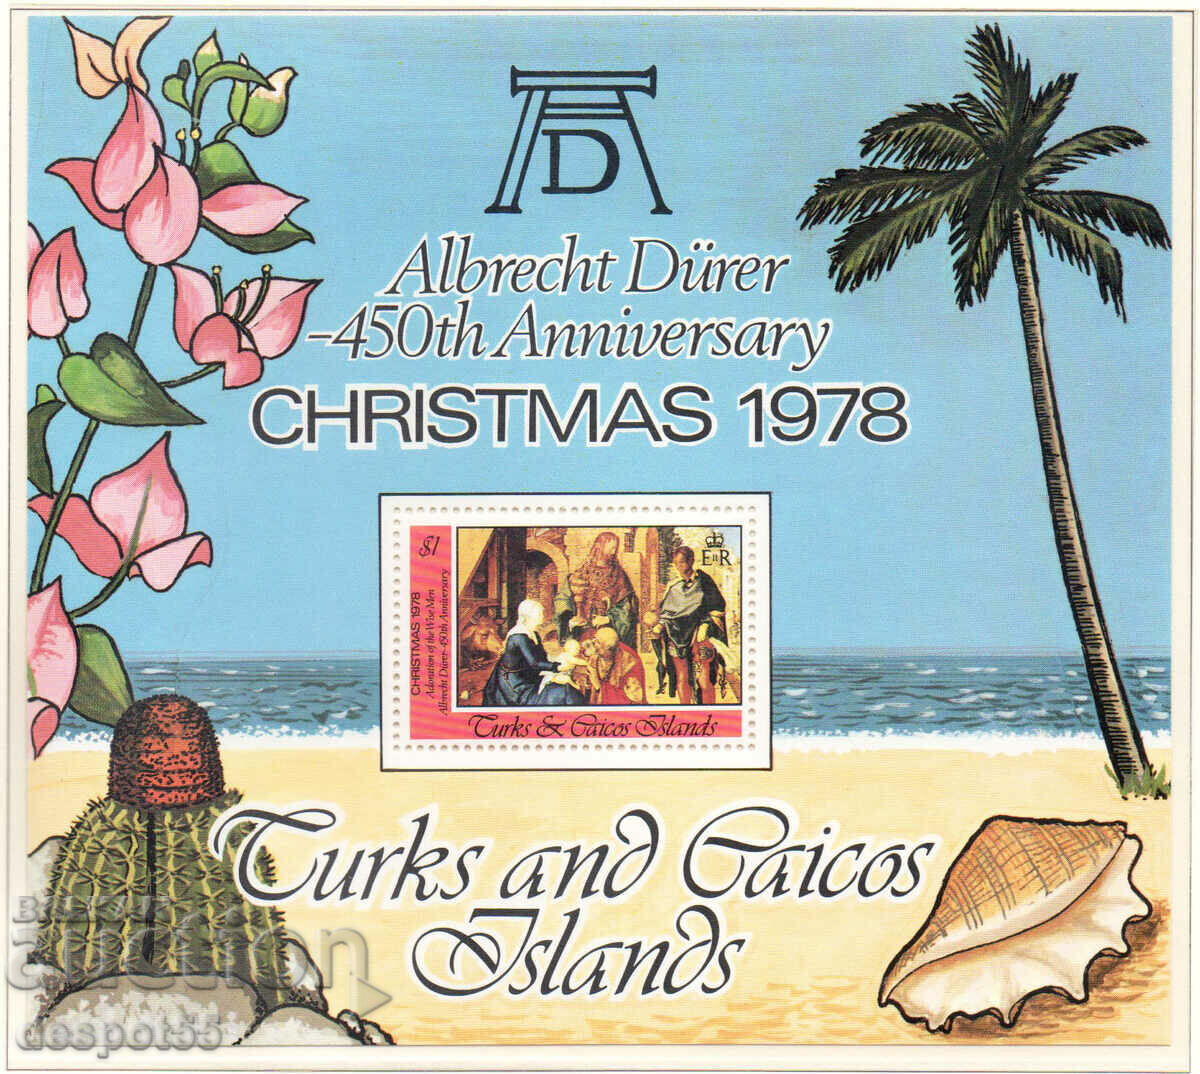 1978. Търкс и Кайкос. Коледа - Картини на Дюрер.